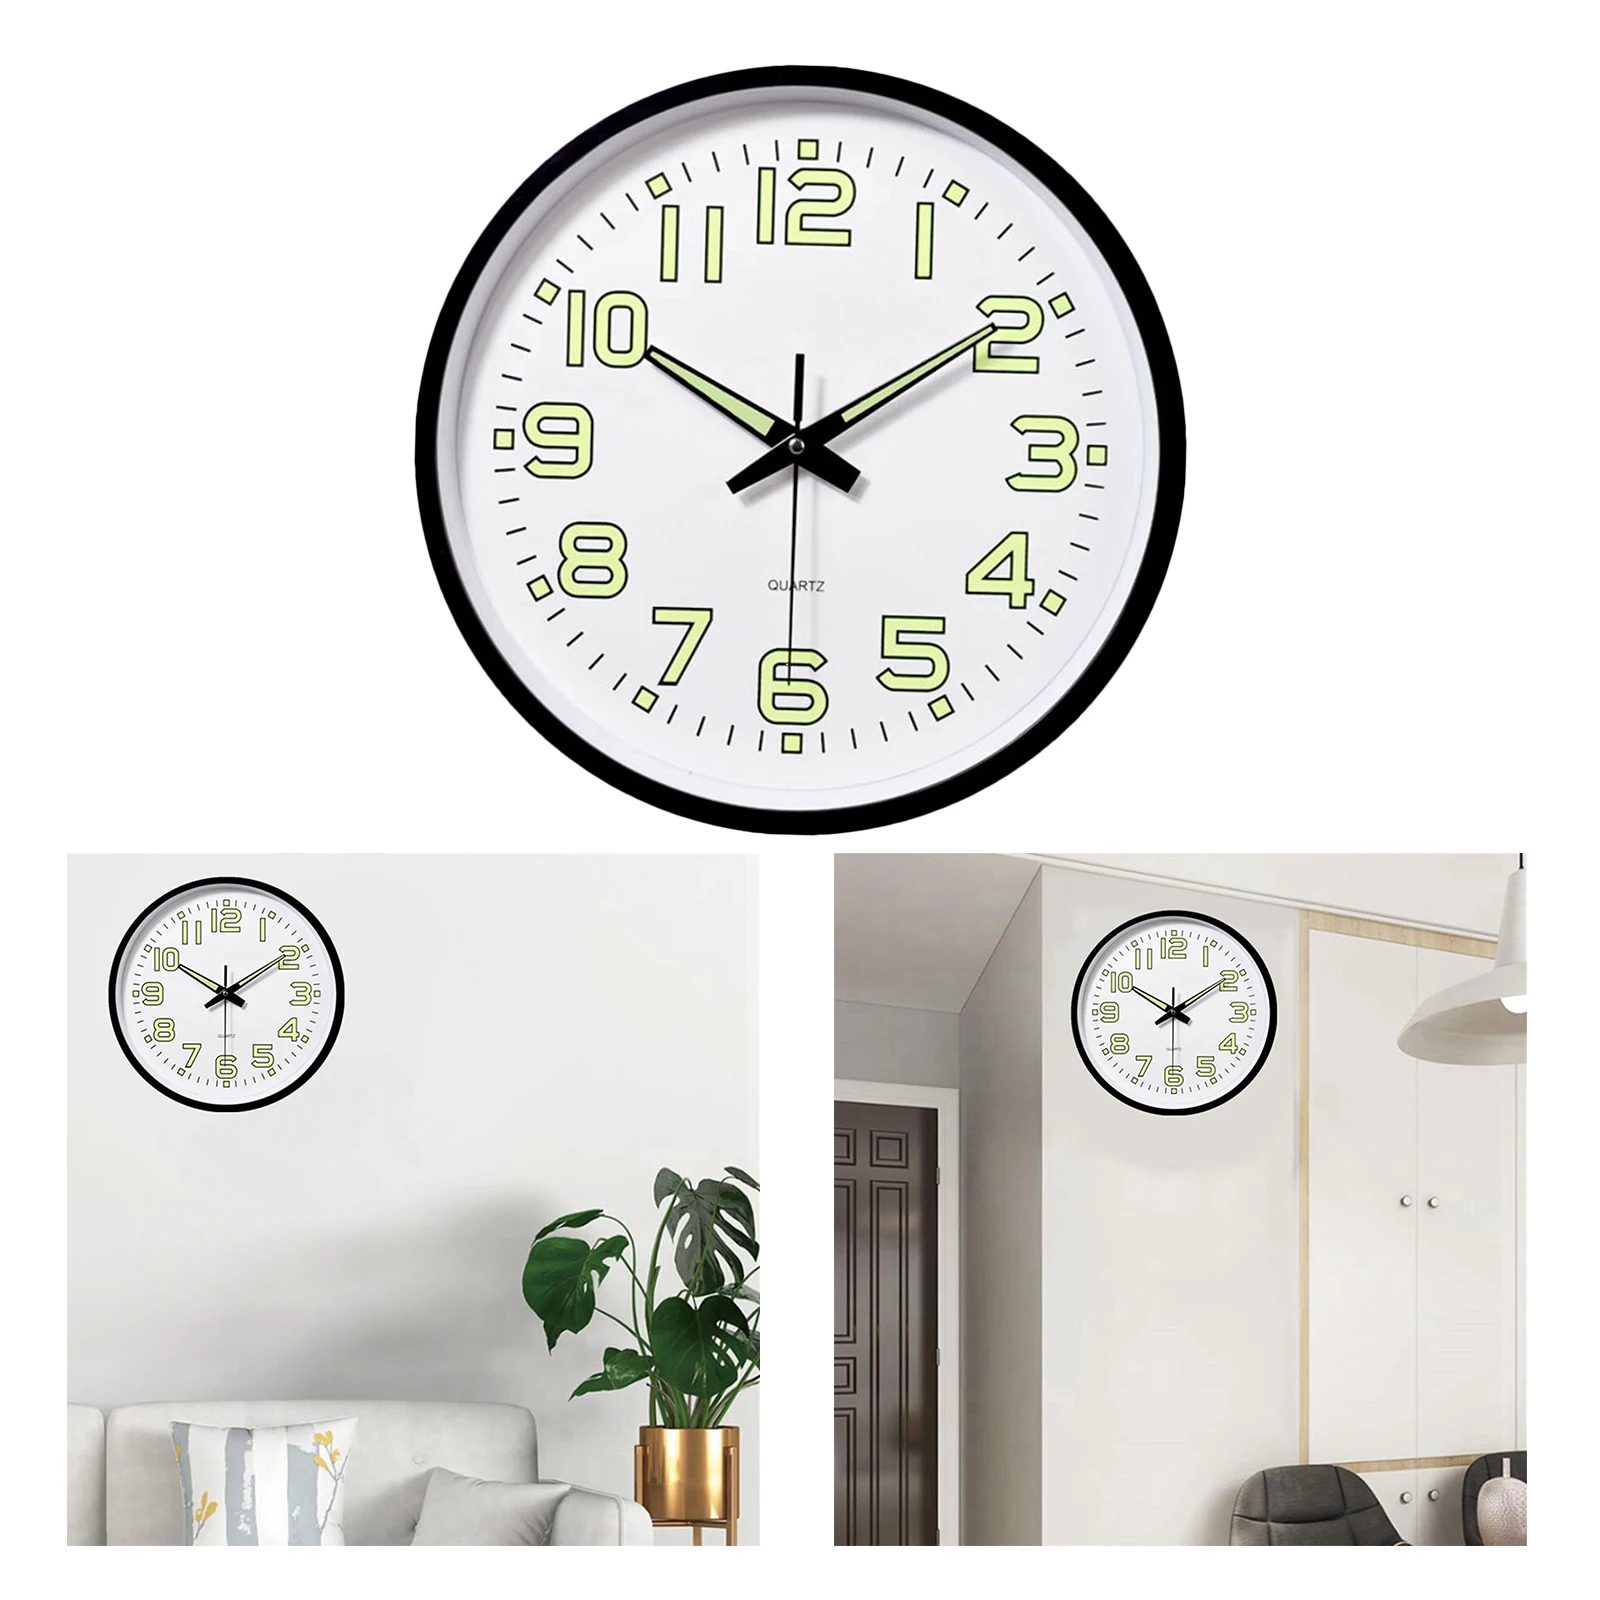 12 Inch Luminous Minimalist Wall Clock Night Lights Round Wall Clock Decorative Wall Clock Home/Office/Classroom/School Clock